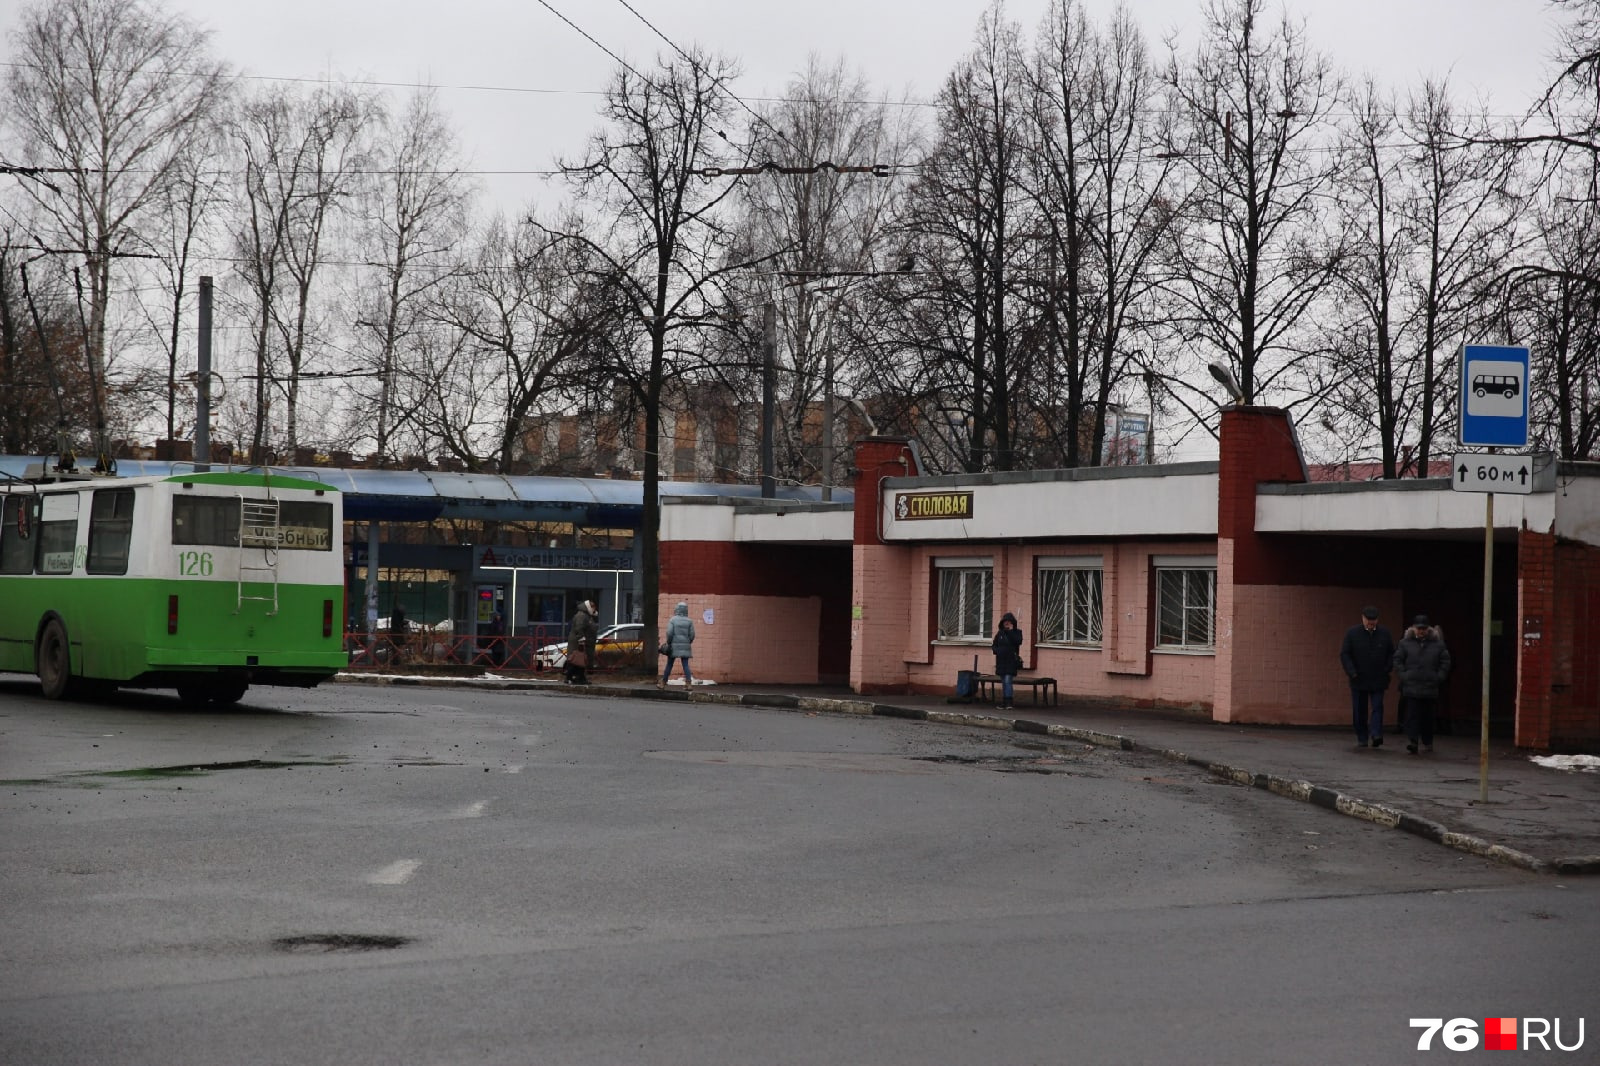 Сейчас на площади расположены конечные остановки троллейбусов и автобусов, следующих до Шинного завода 